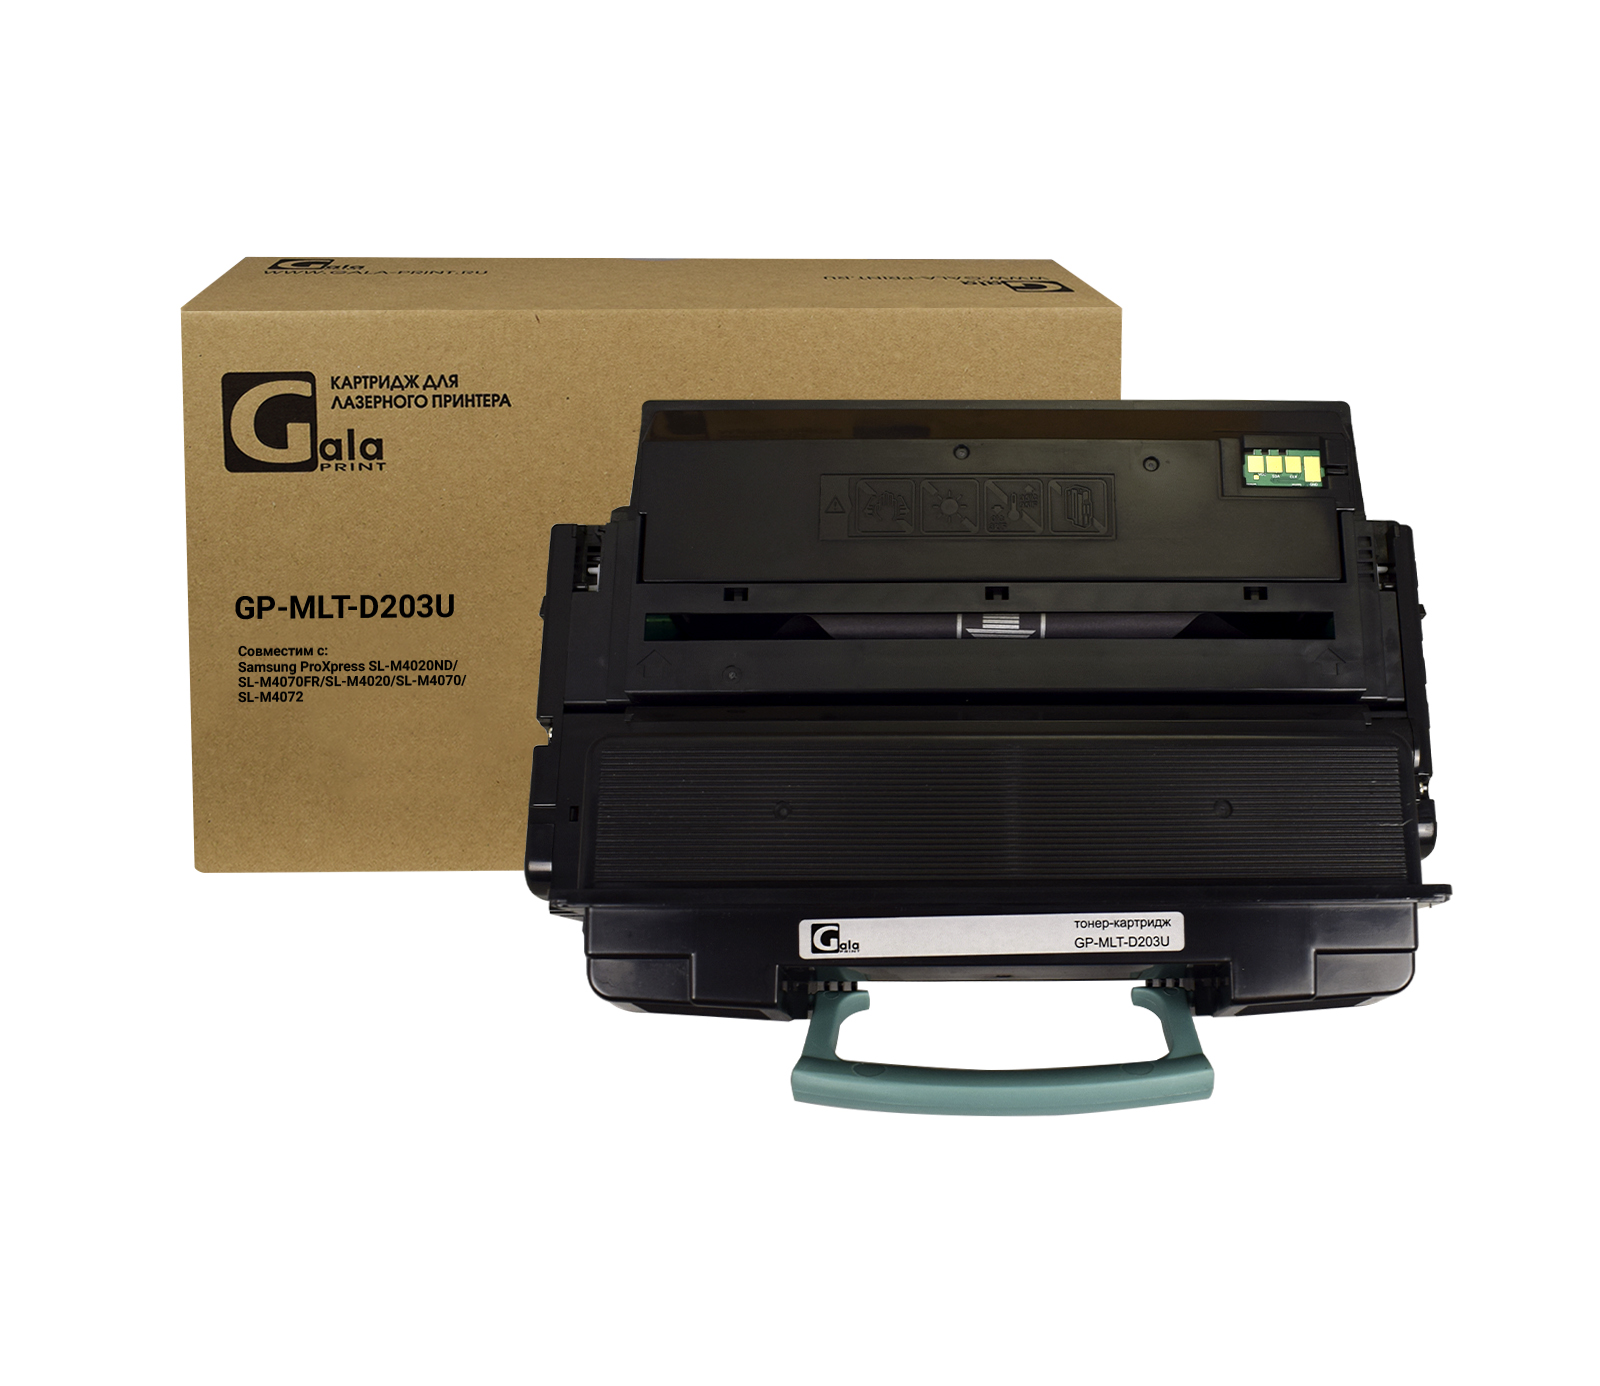 Картридж GP-MLT-D203U для принтеров Samsung ProXpress SL-M4020/4070/4070FR/4070FX 15000 копий GalaPrint